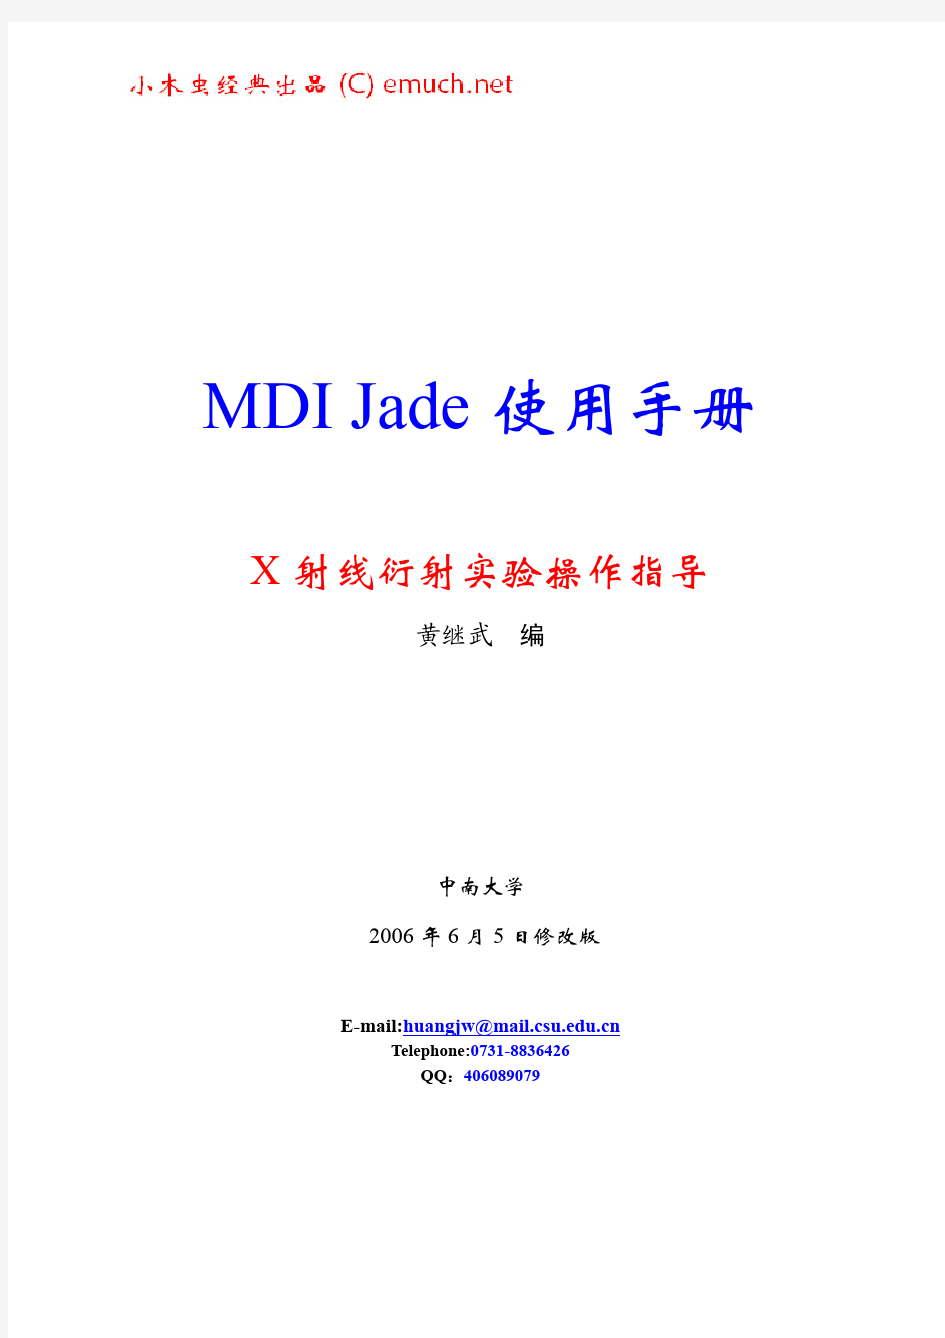 MDI JADE 中文使用手册-黄老师